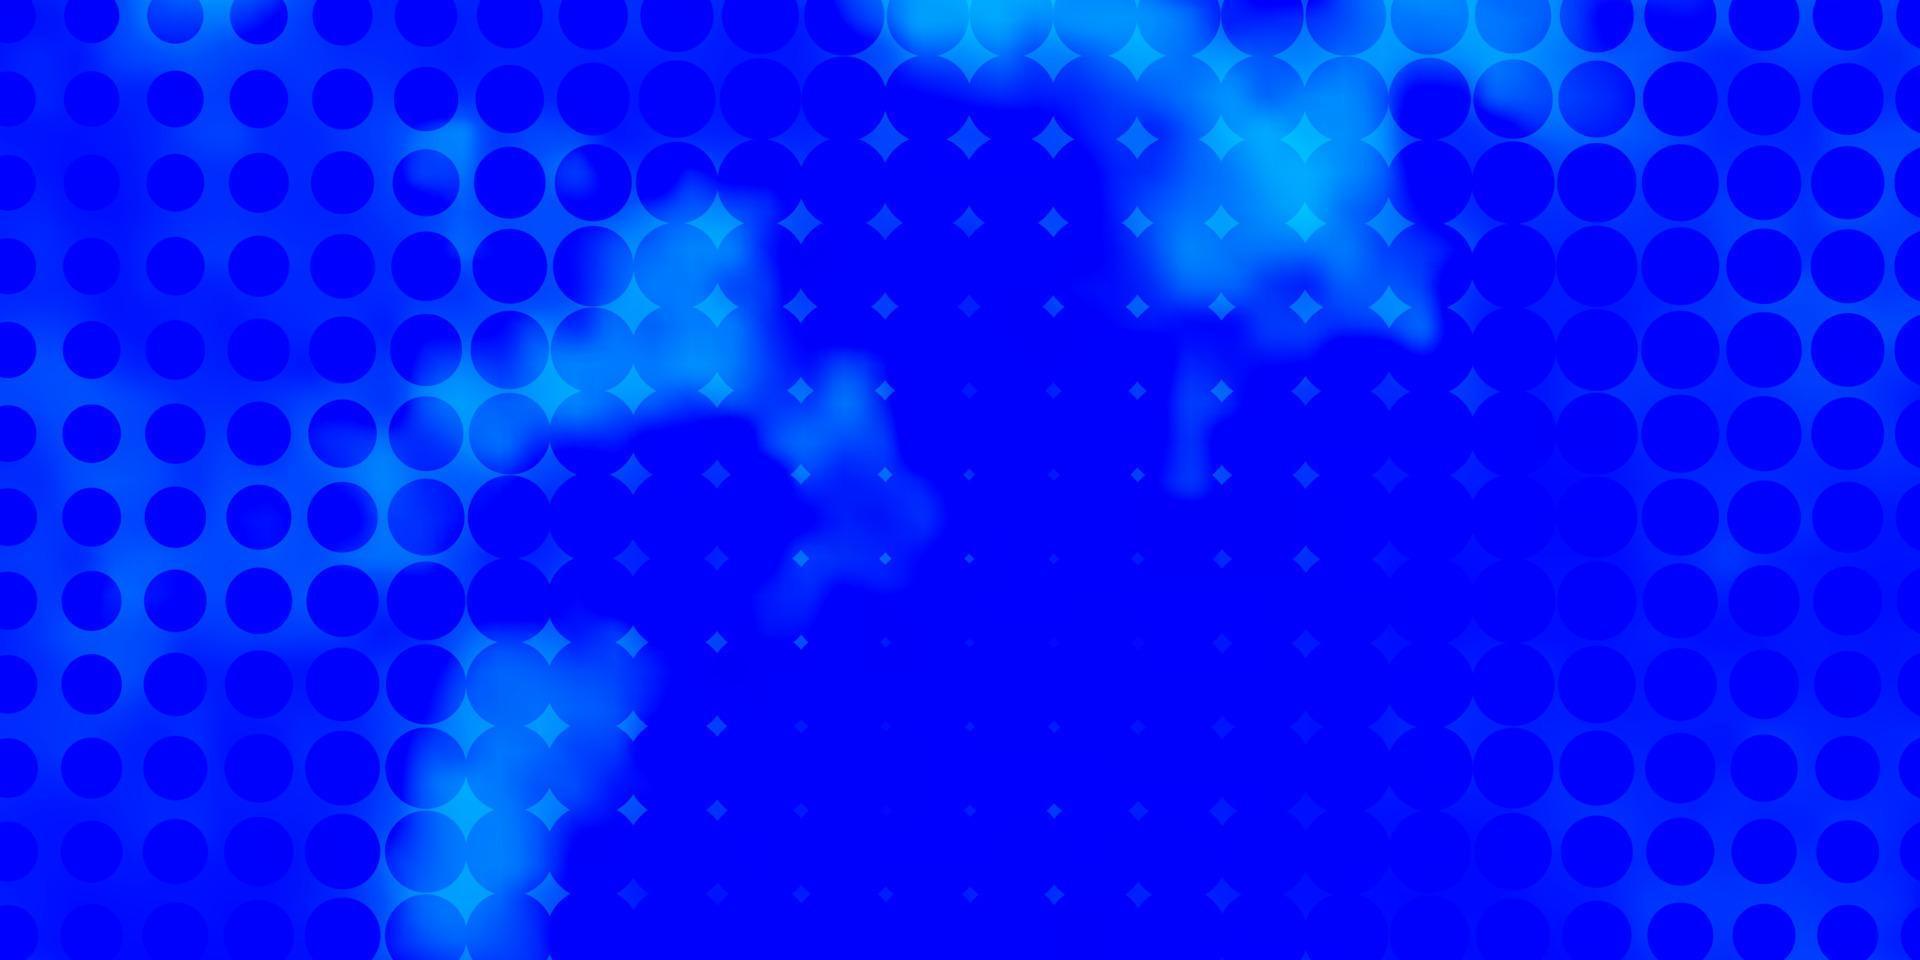 layout vettoriale azzurro con forme circolari.